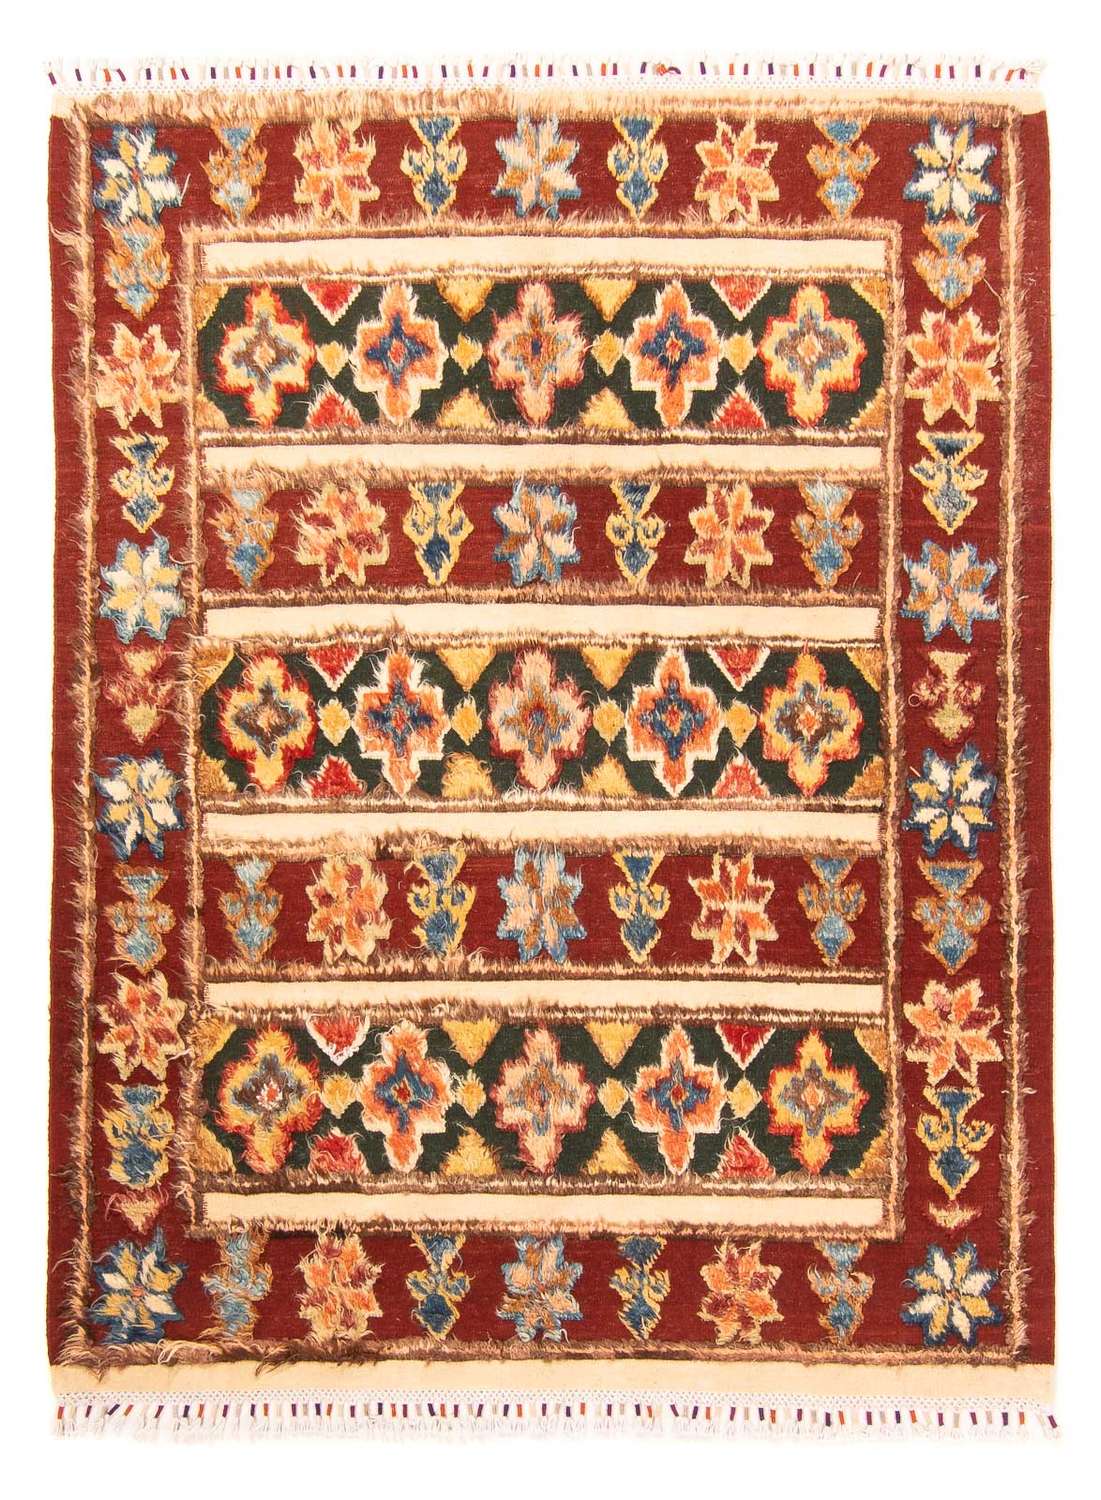 Berber Rug - 211 x 158 cm - multicolored